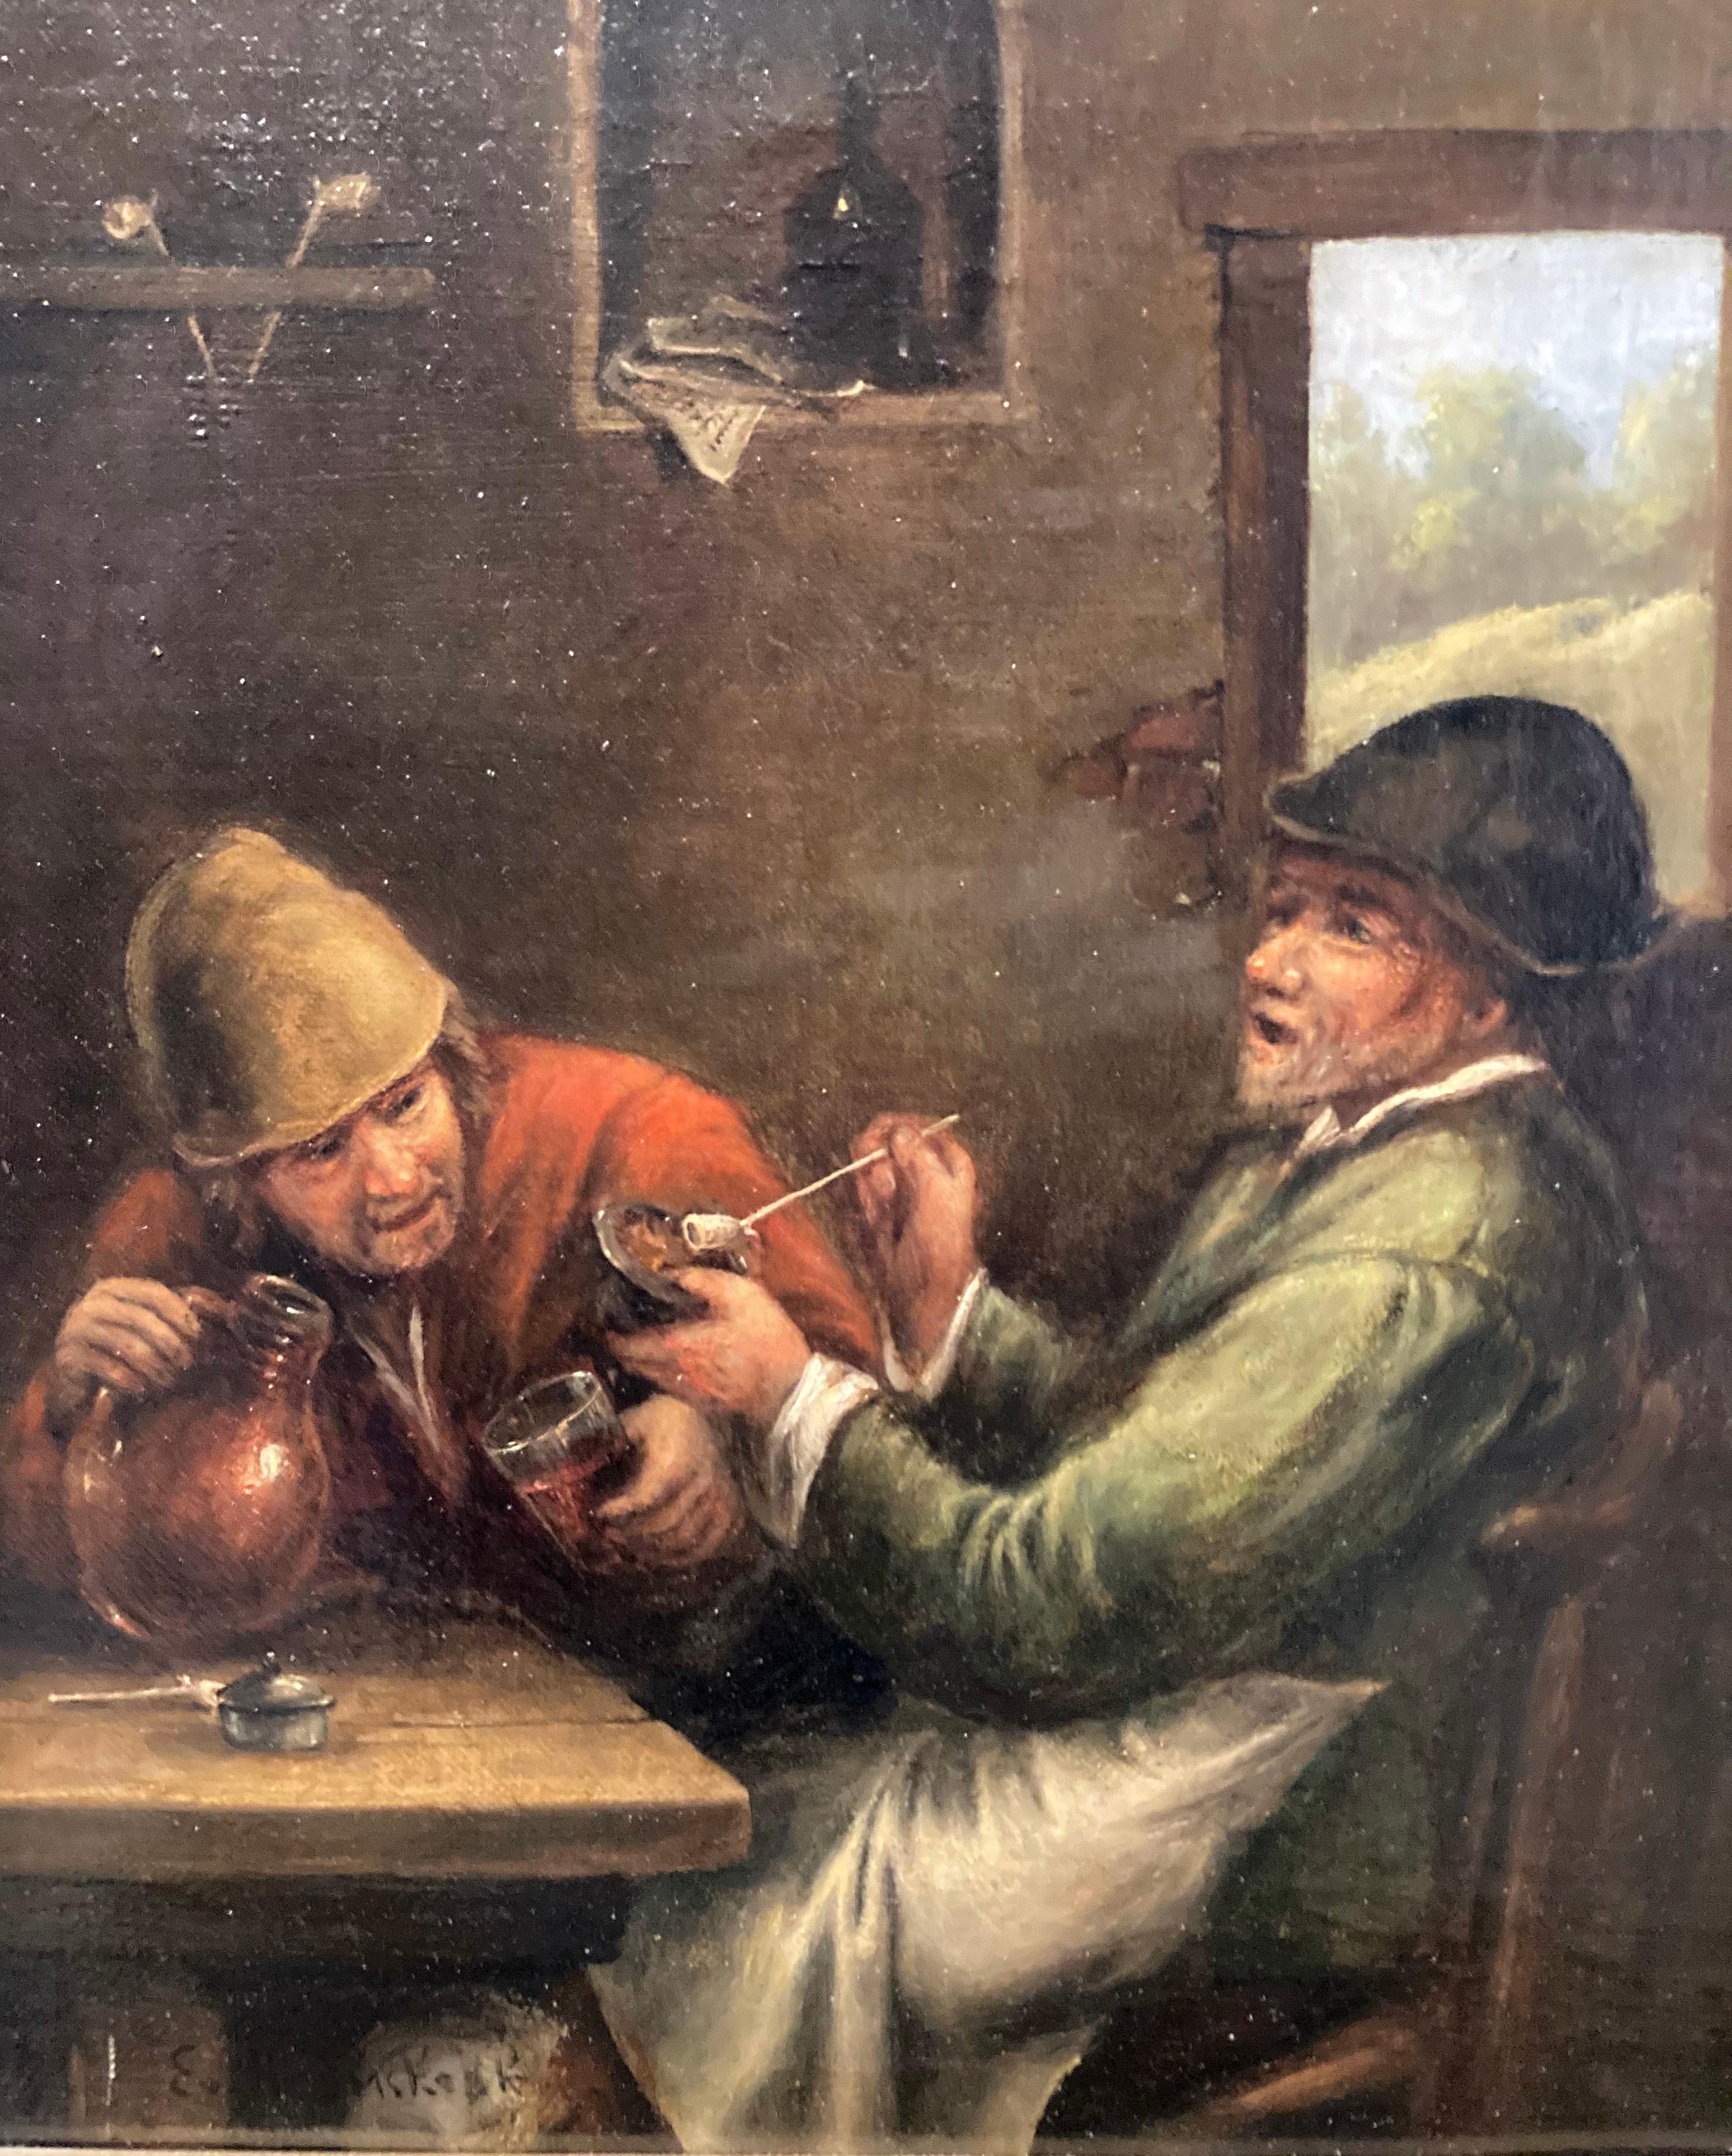 Nach Heemskerck, Zwei alte Männer siiting in einem Gasthaus, Getränkeszene, Alter Meister – Painting von Egbert Van Heemskerck the Elder